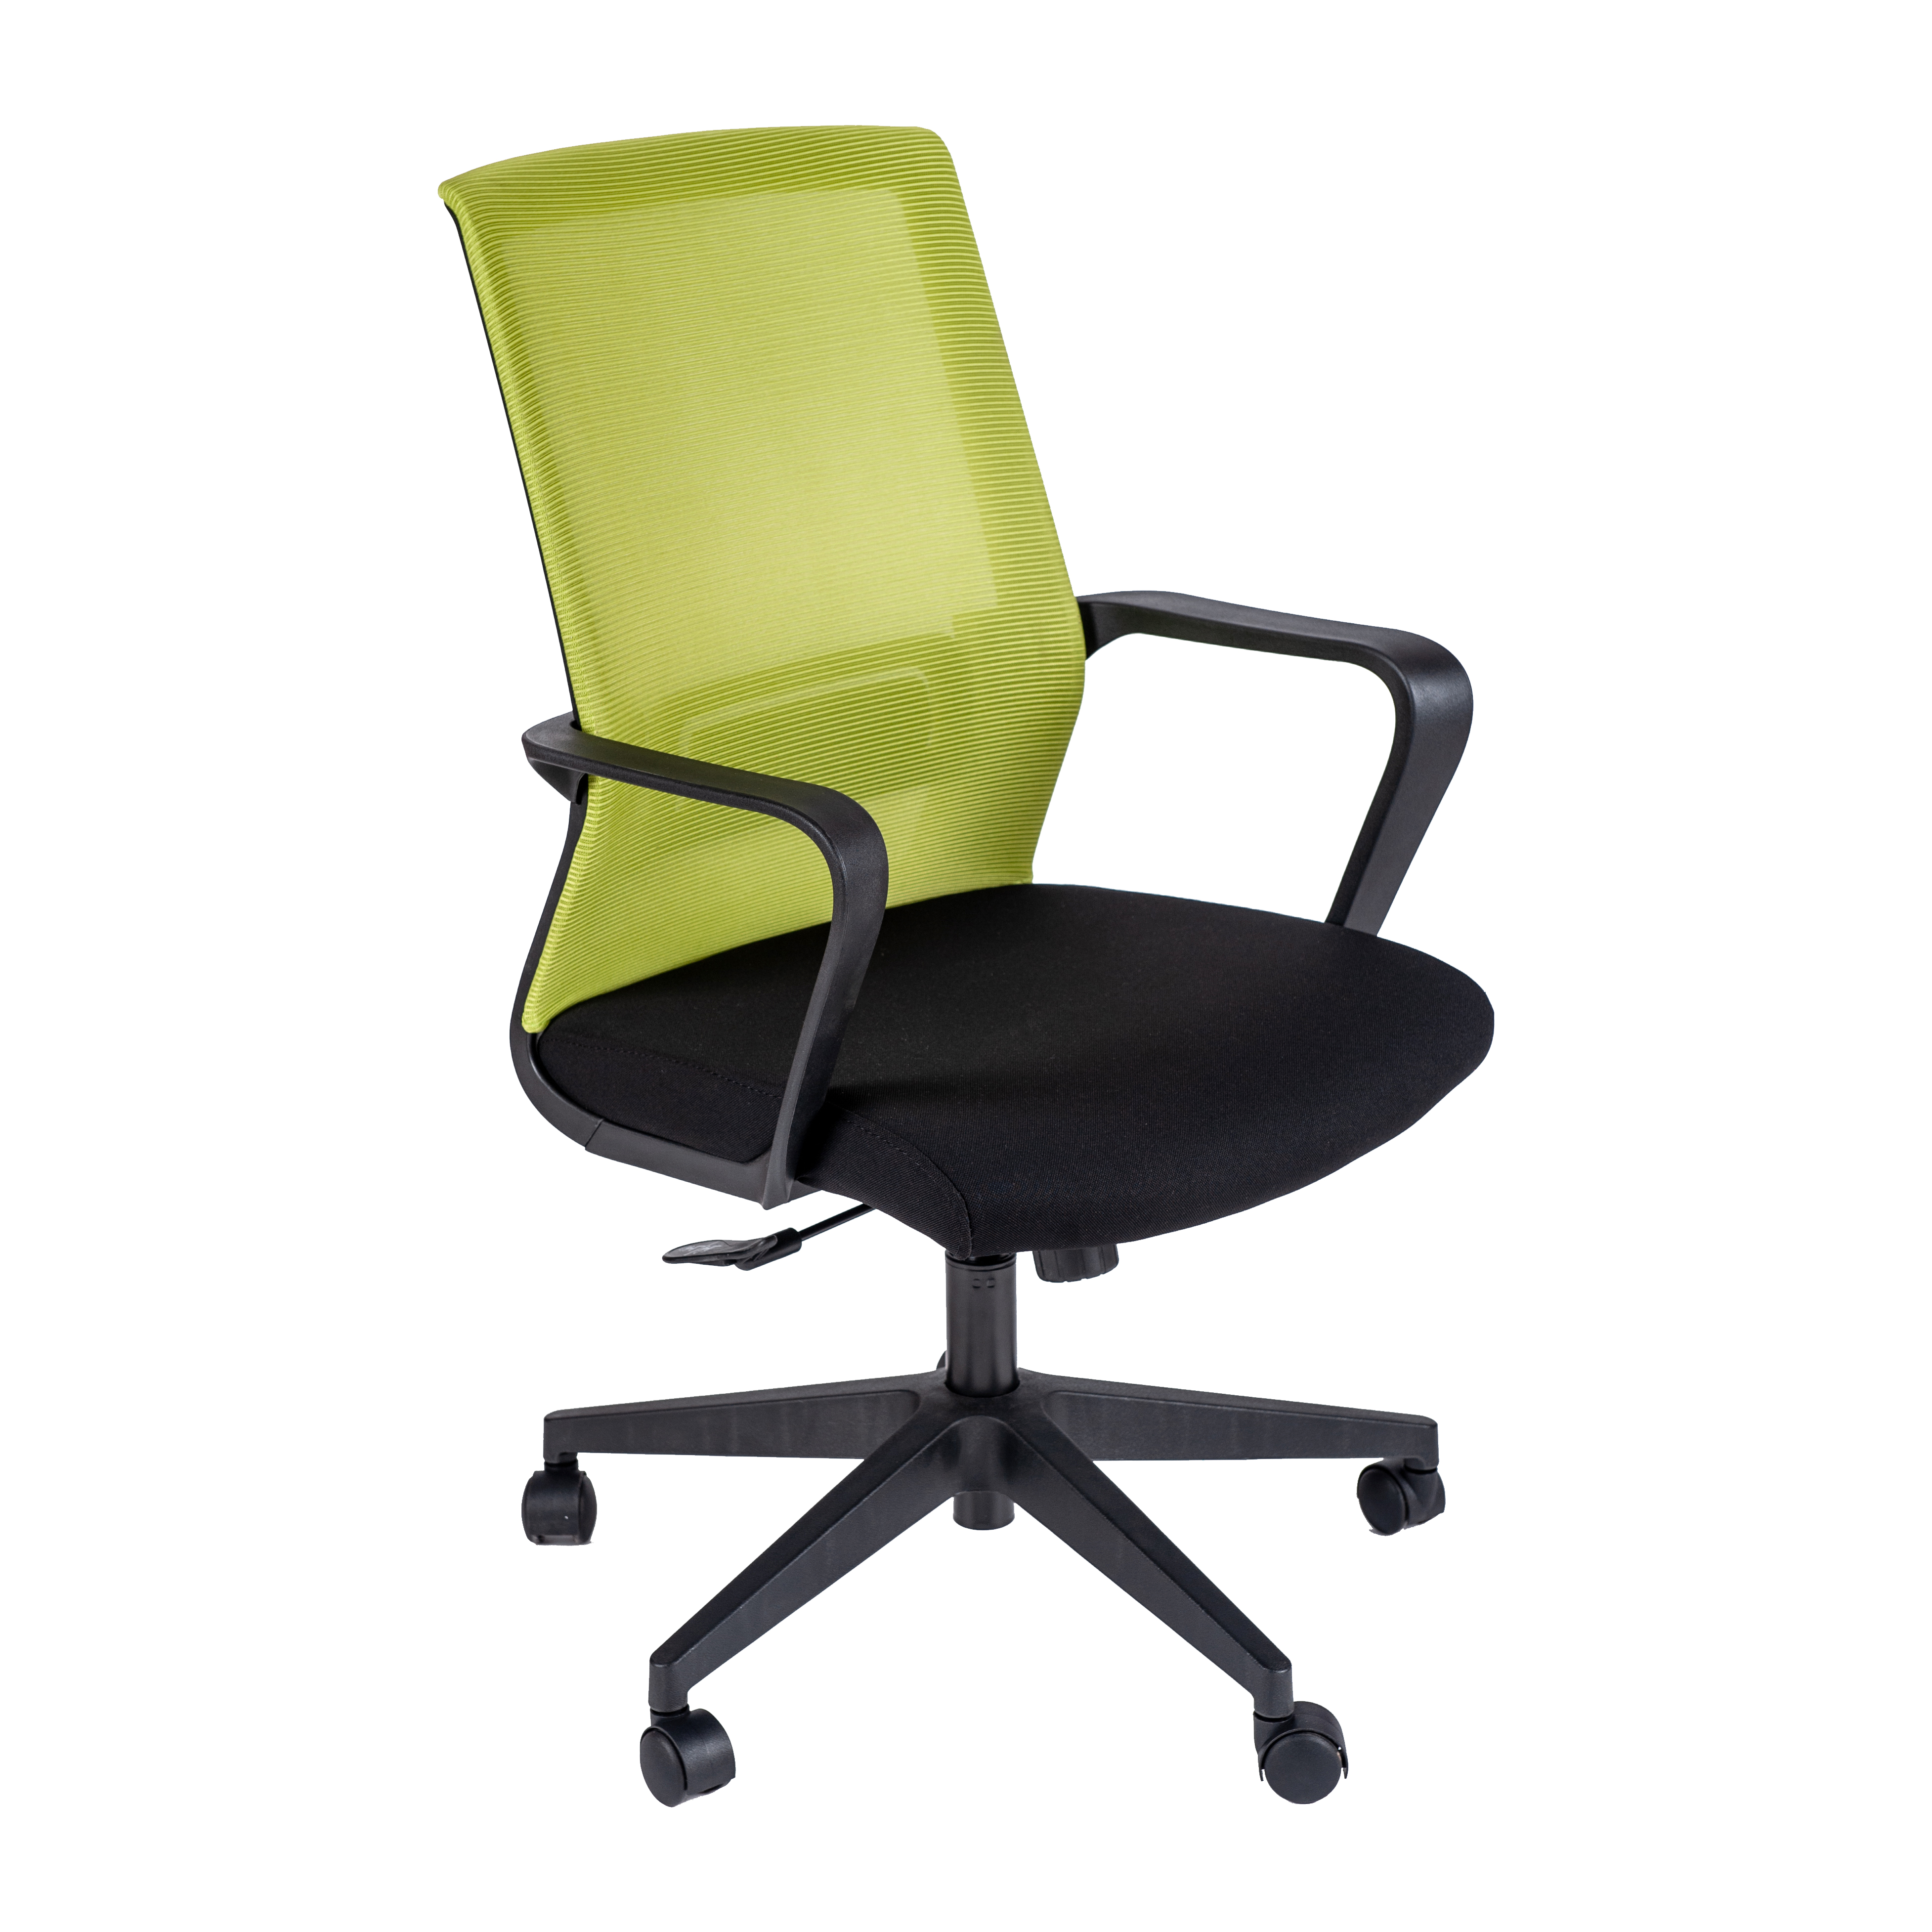 Работен офис стол - Toro зелен